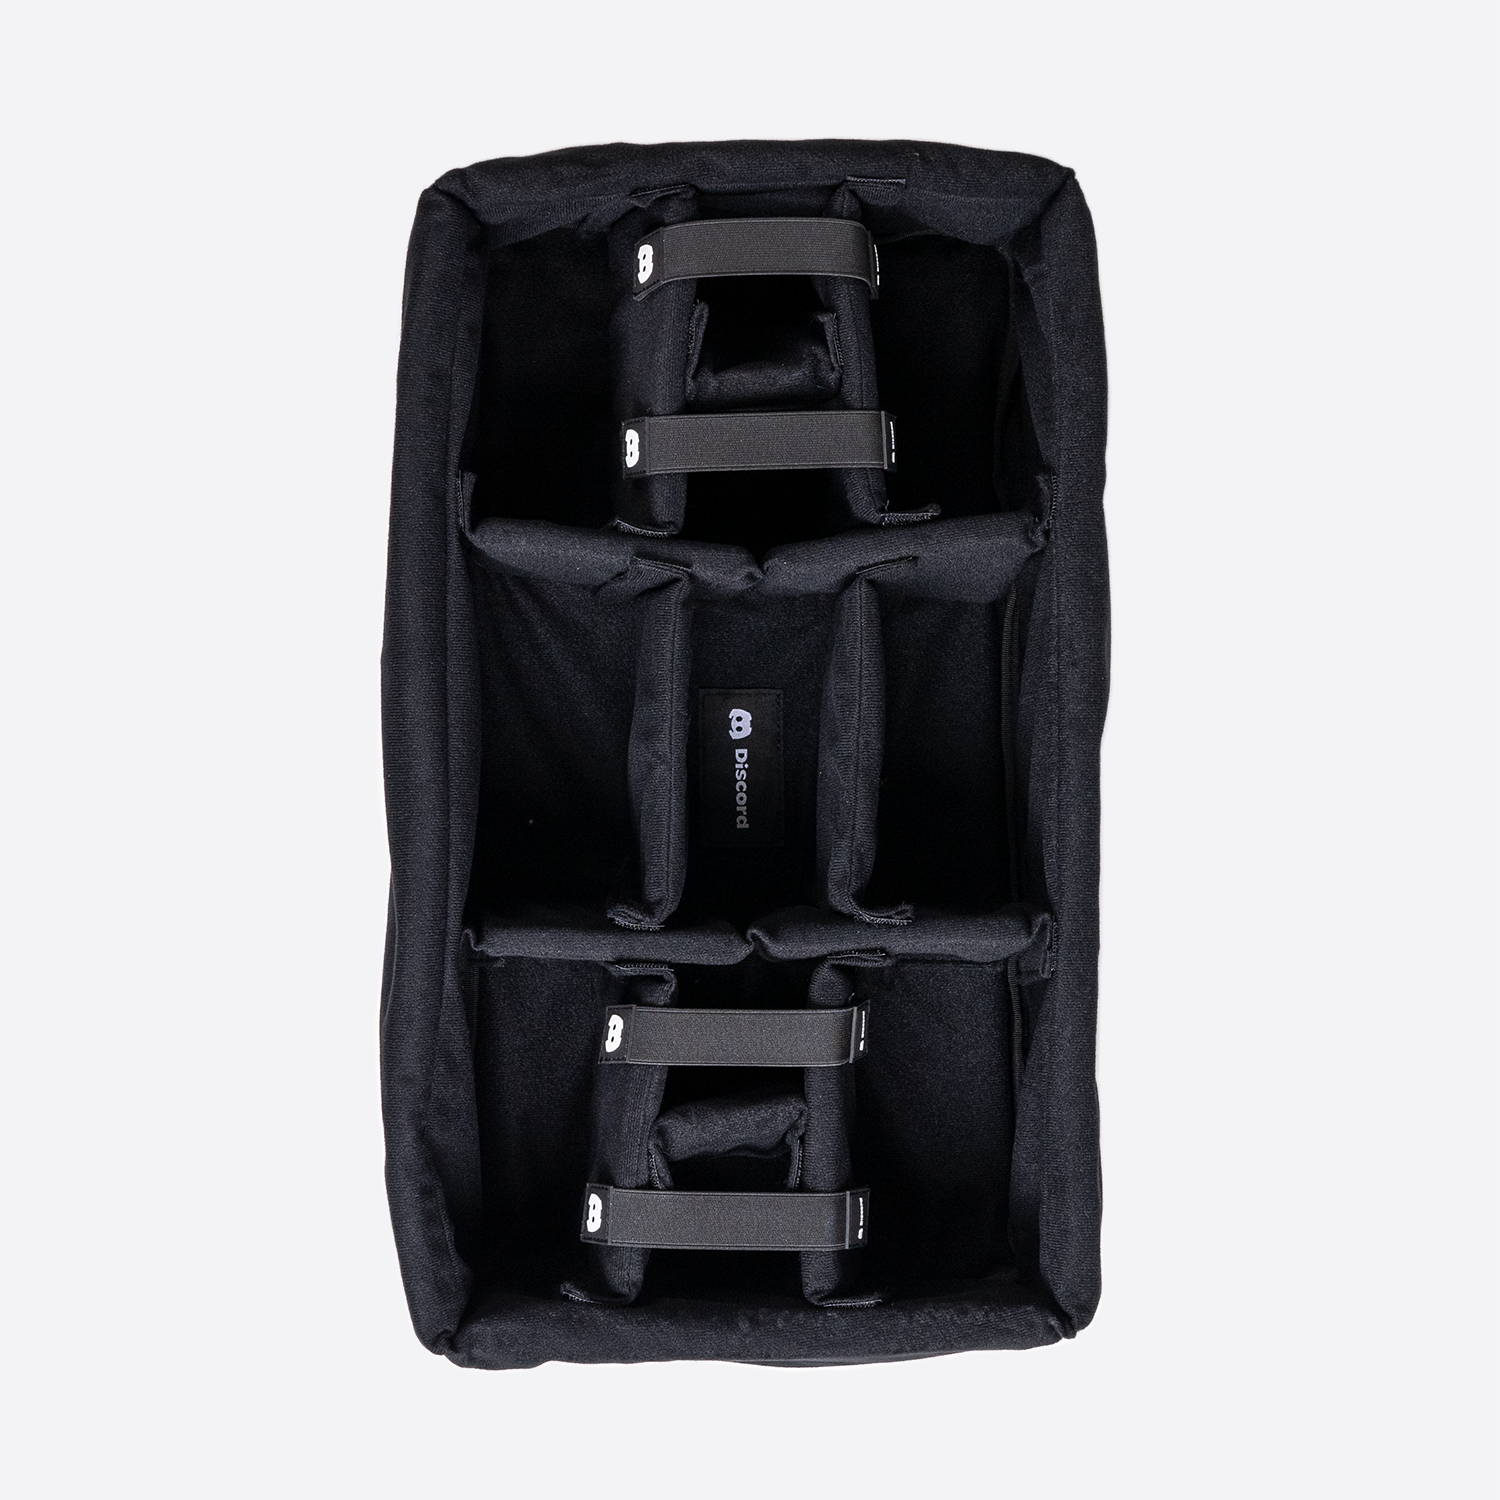 Duffle Bag Organizer / Duffle Bag Insert / Liner Protector 